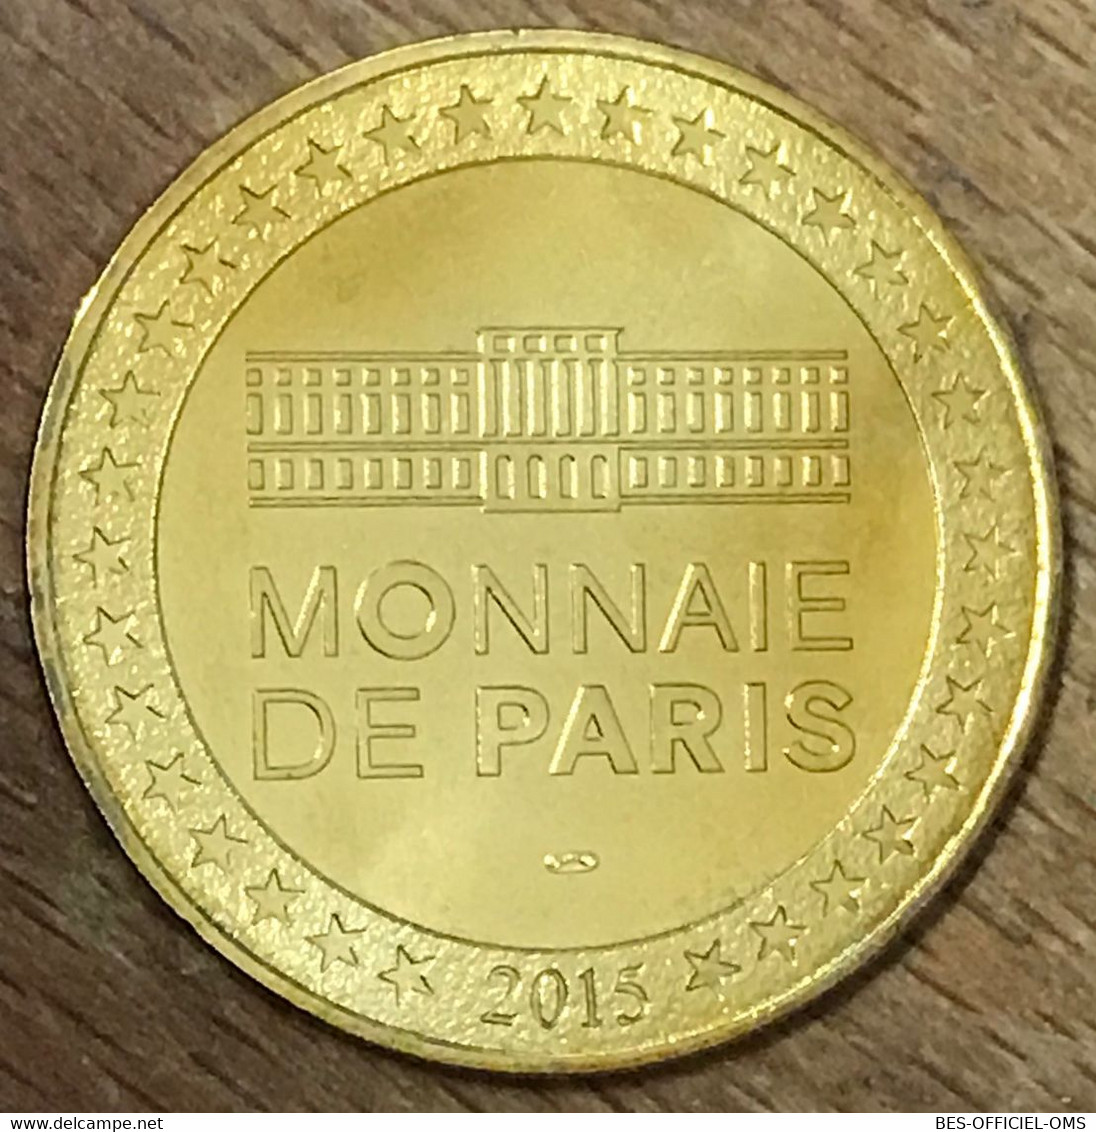 75009 PARIS LA TRIBUNE 30 ANS MDP 2015 MEDAILLE SOUVENIR MONNAIE DE PARIS JETON TOURISTIQUE MEDALS COINS TOKENS - 2015